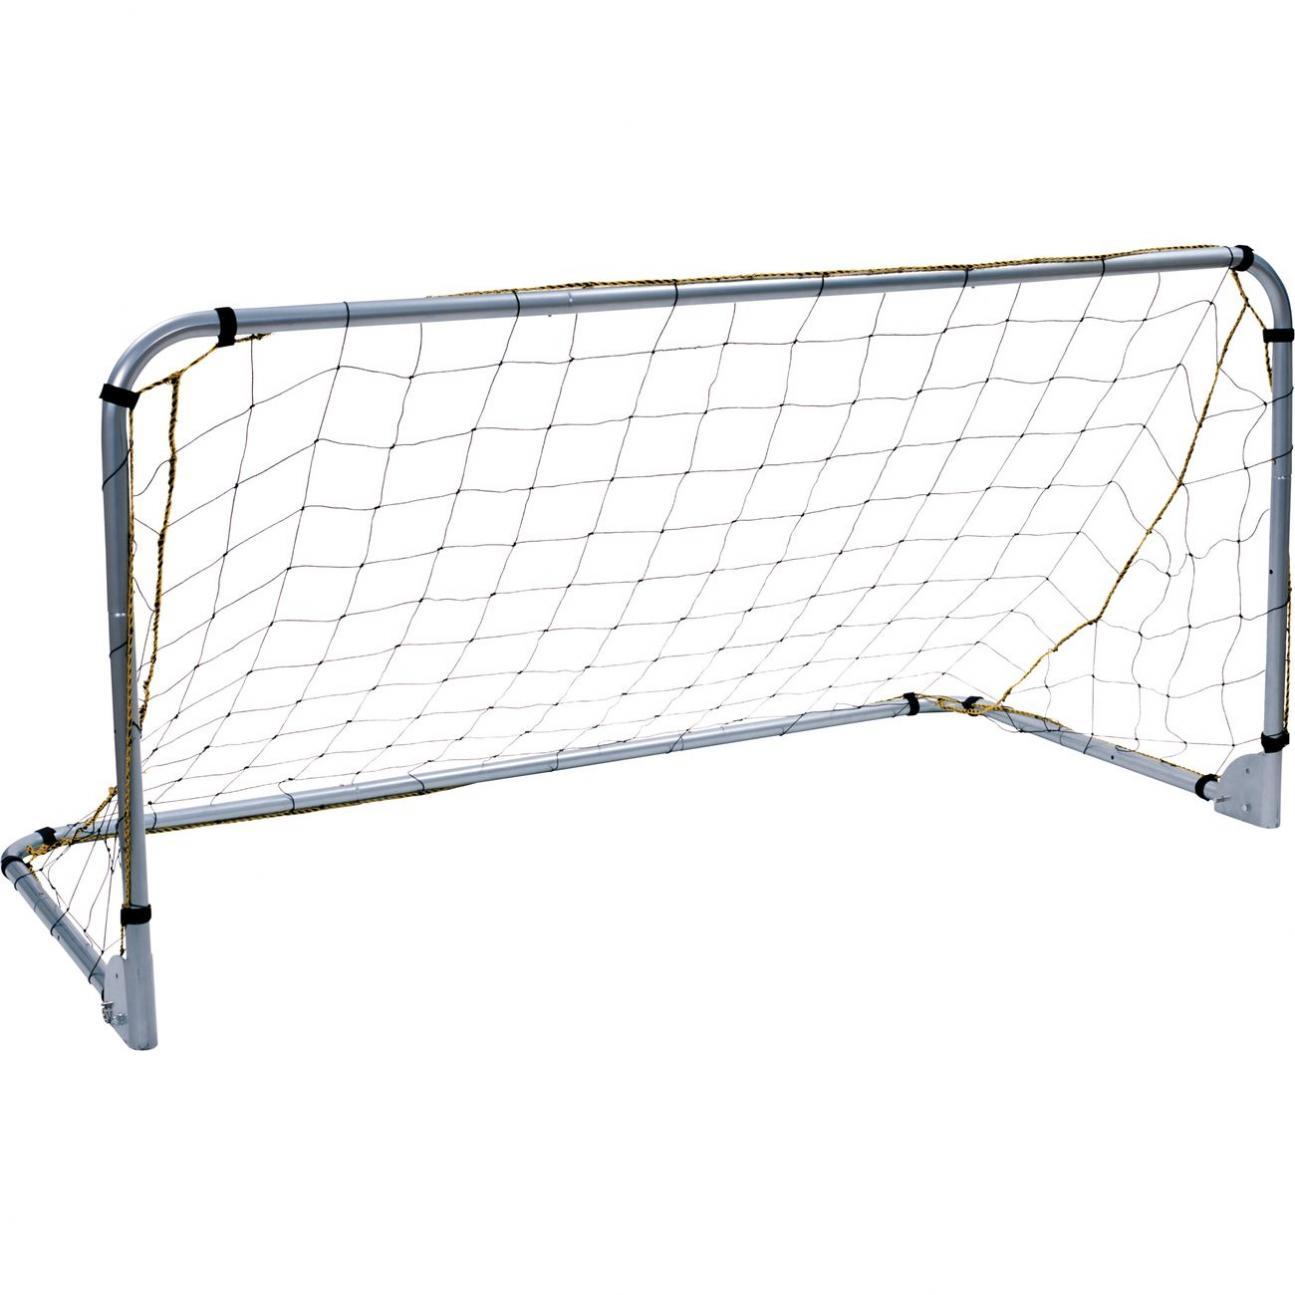 Regent 8 x 6ft Folding Soccer Goal